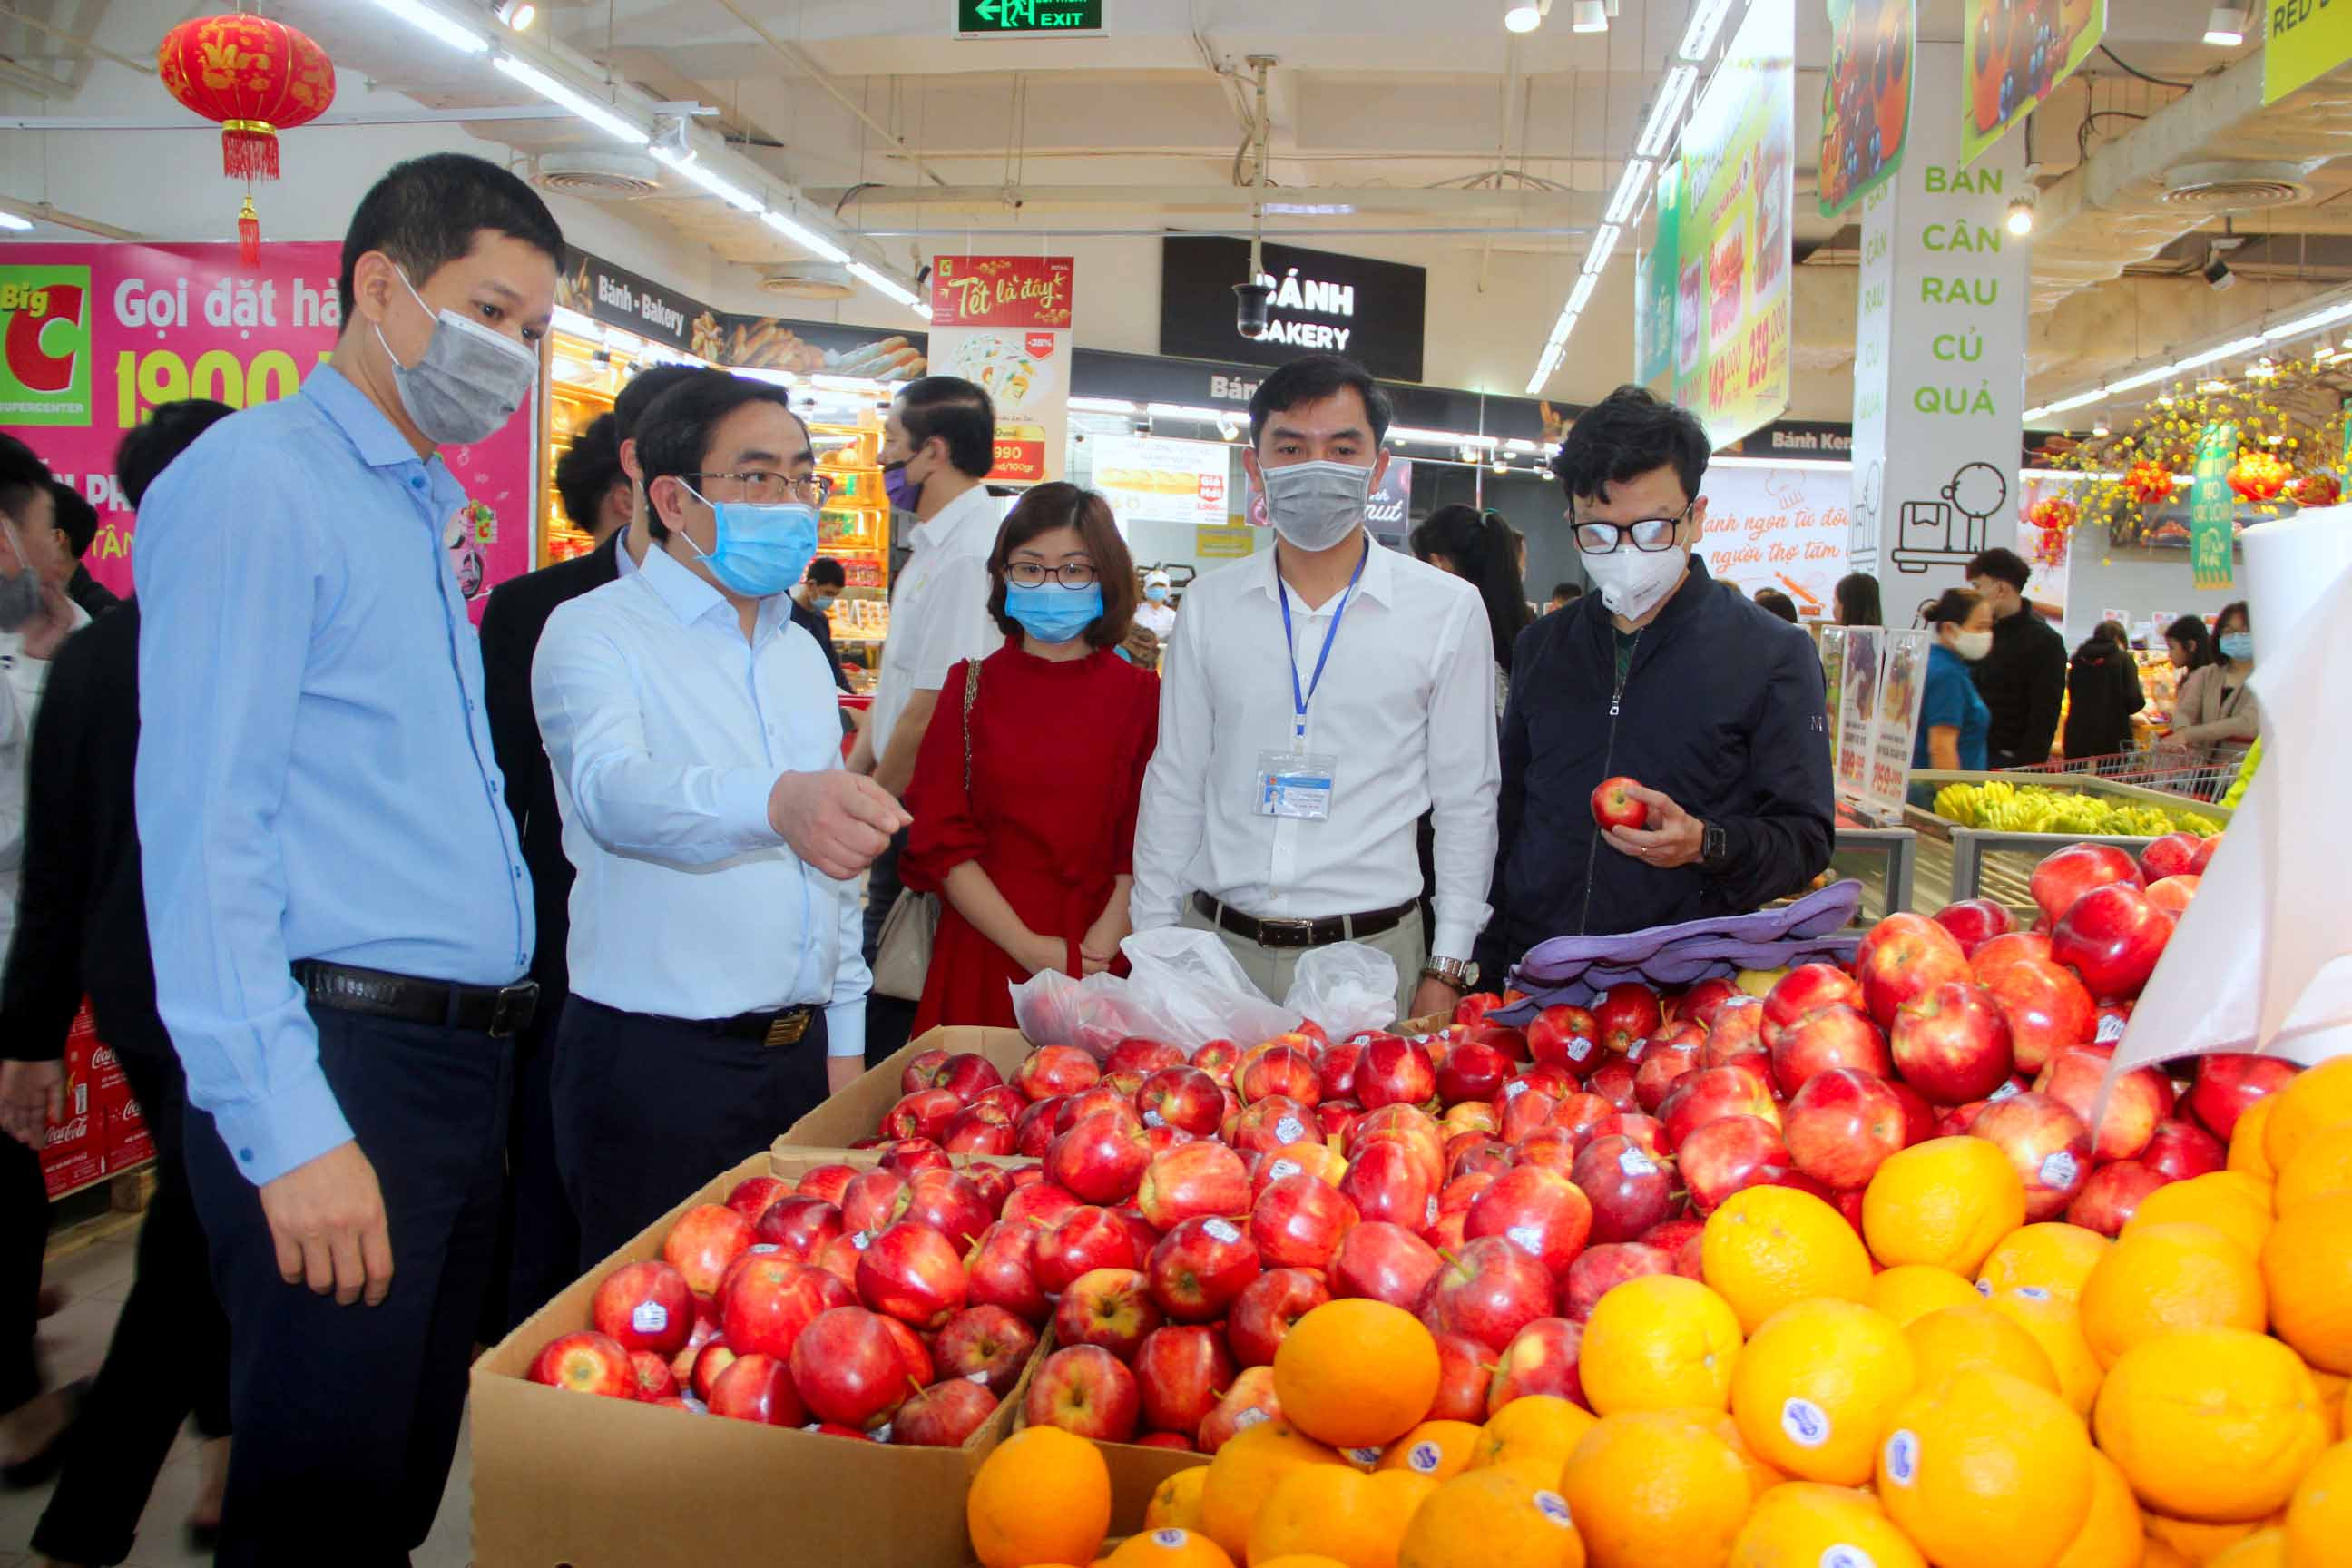 Đoàn công tác kiểm tra hàng hóa phục vụ Tết tại siêu thị BigC Vinh. Ảnh: Quang An